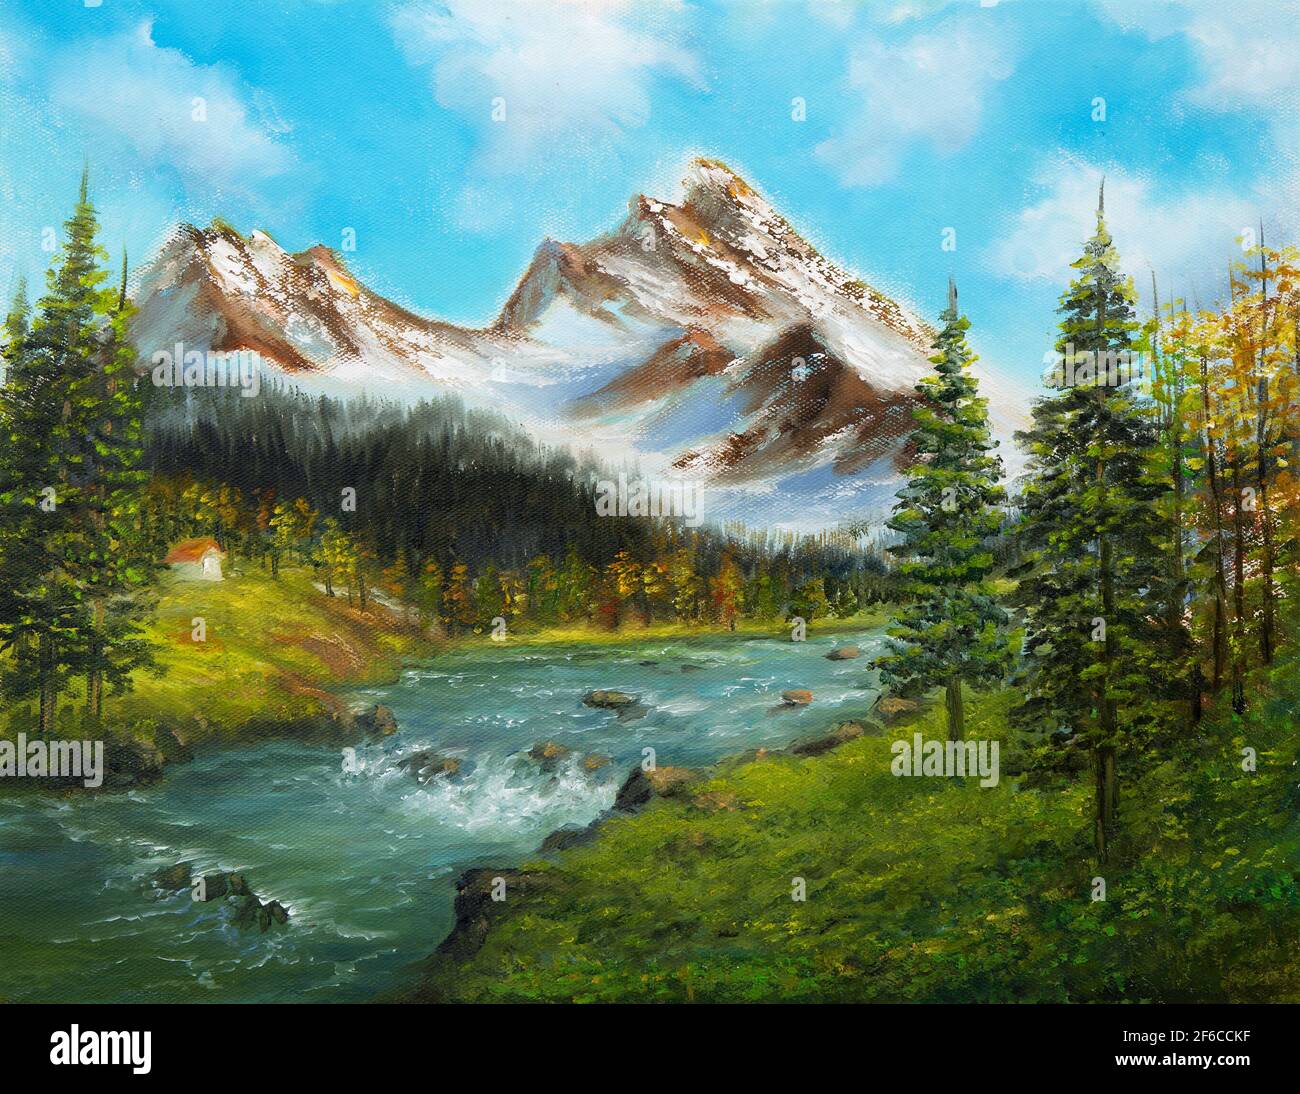 Peinture à l'huile originale du paysage de source d'beautifl, forêt, montagnes de neige et rivière sur toile.Impressionnisme moderne, modernisme, marinisme Banque D'Images